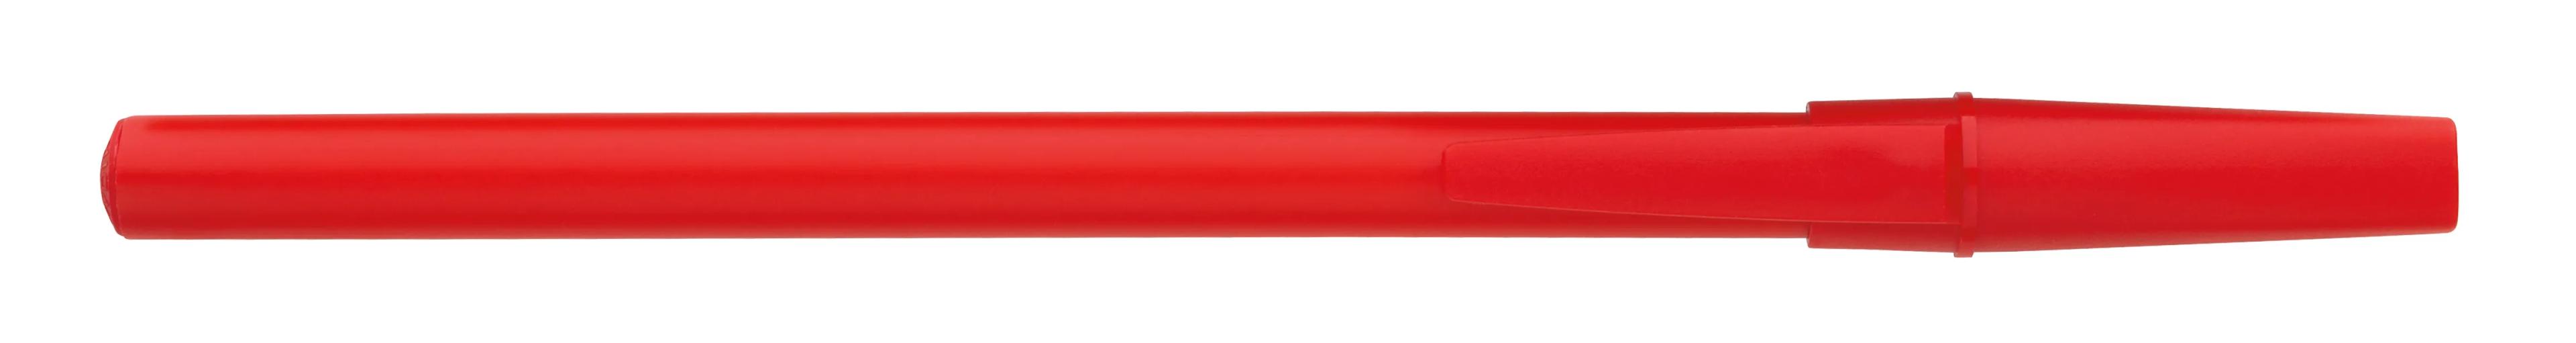 Corporate Promo Stick Pen 16 of 33